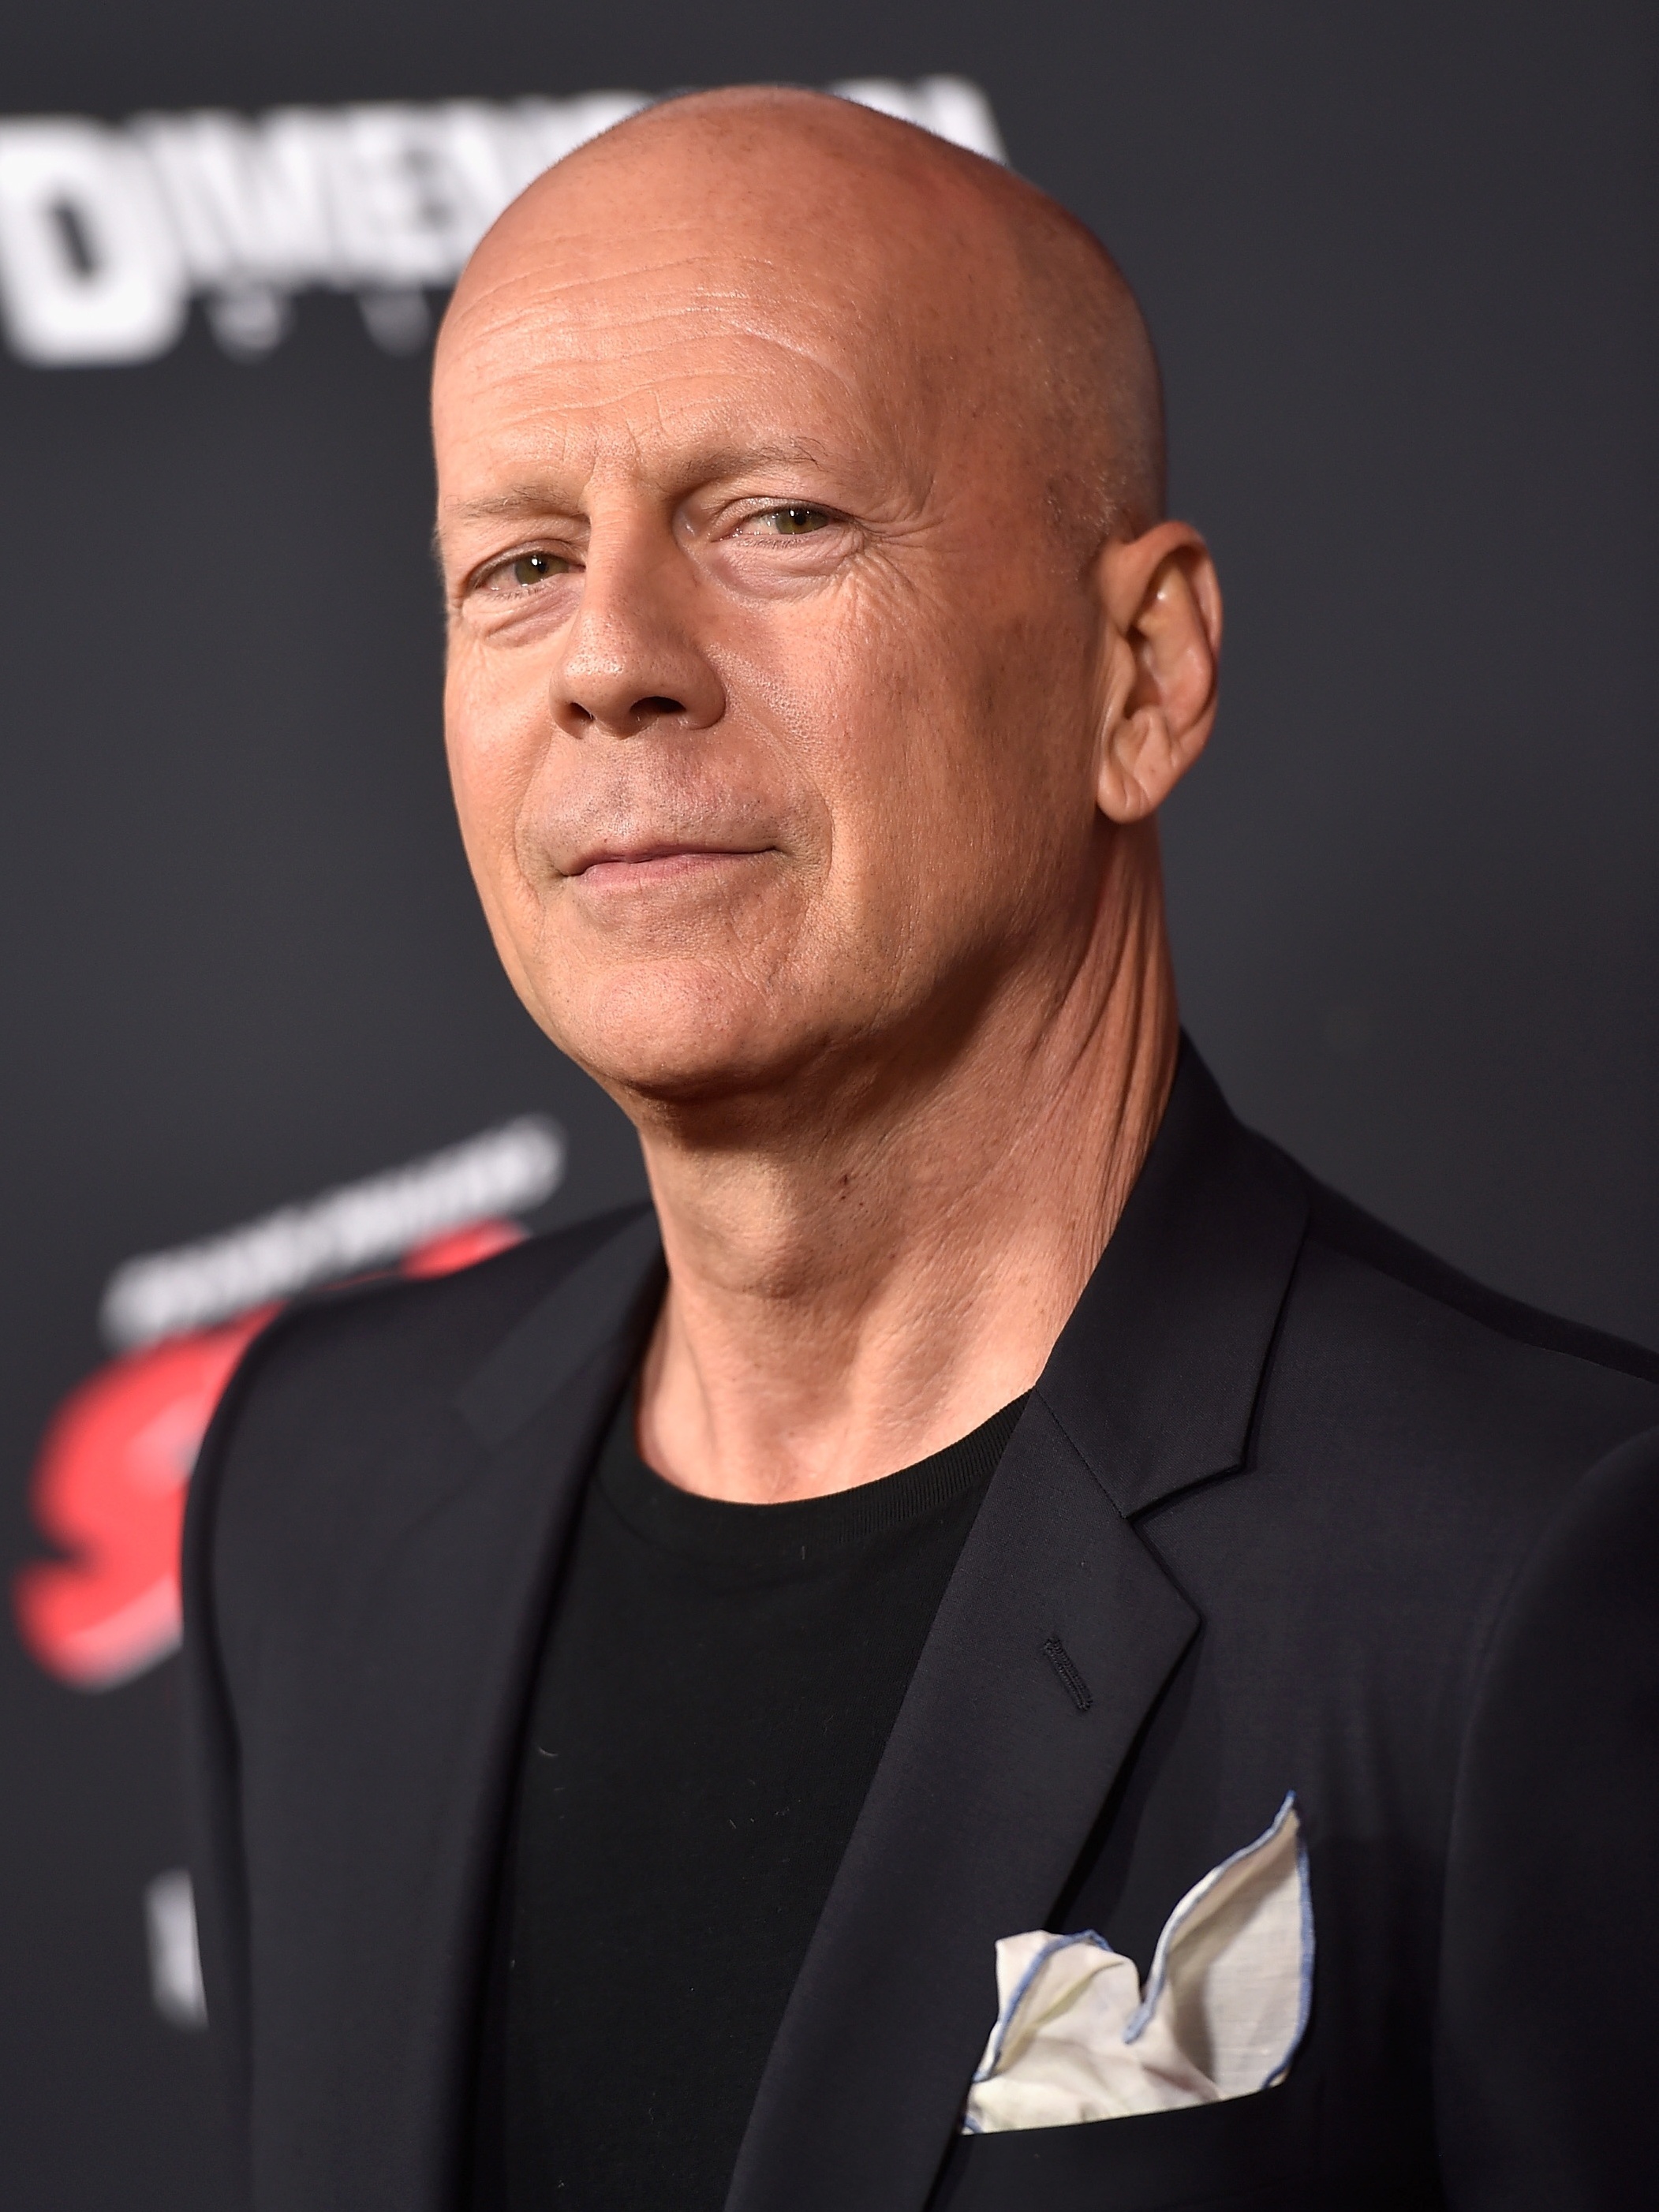 O que afetou a vida profissional do ator Bruce Willis? - Quora